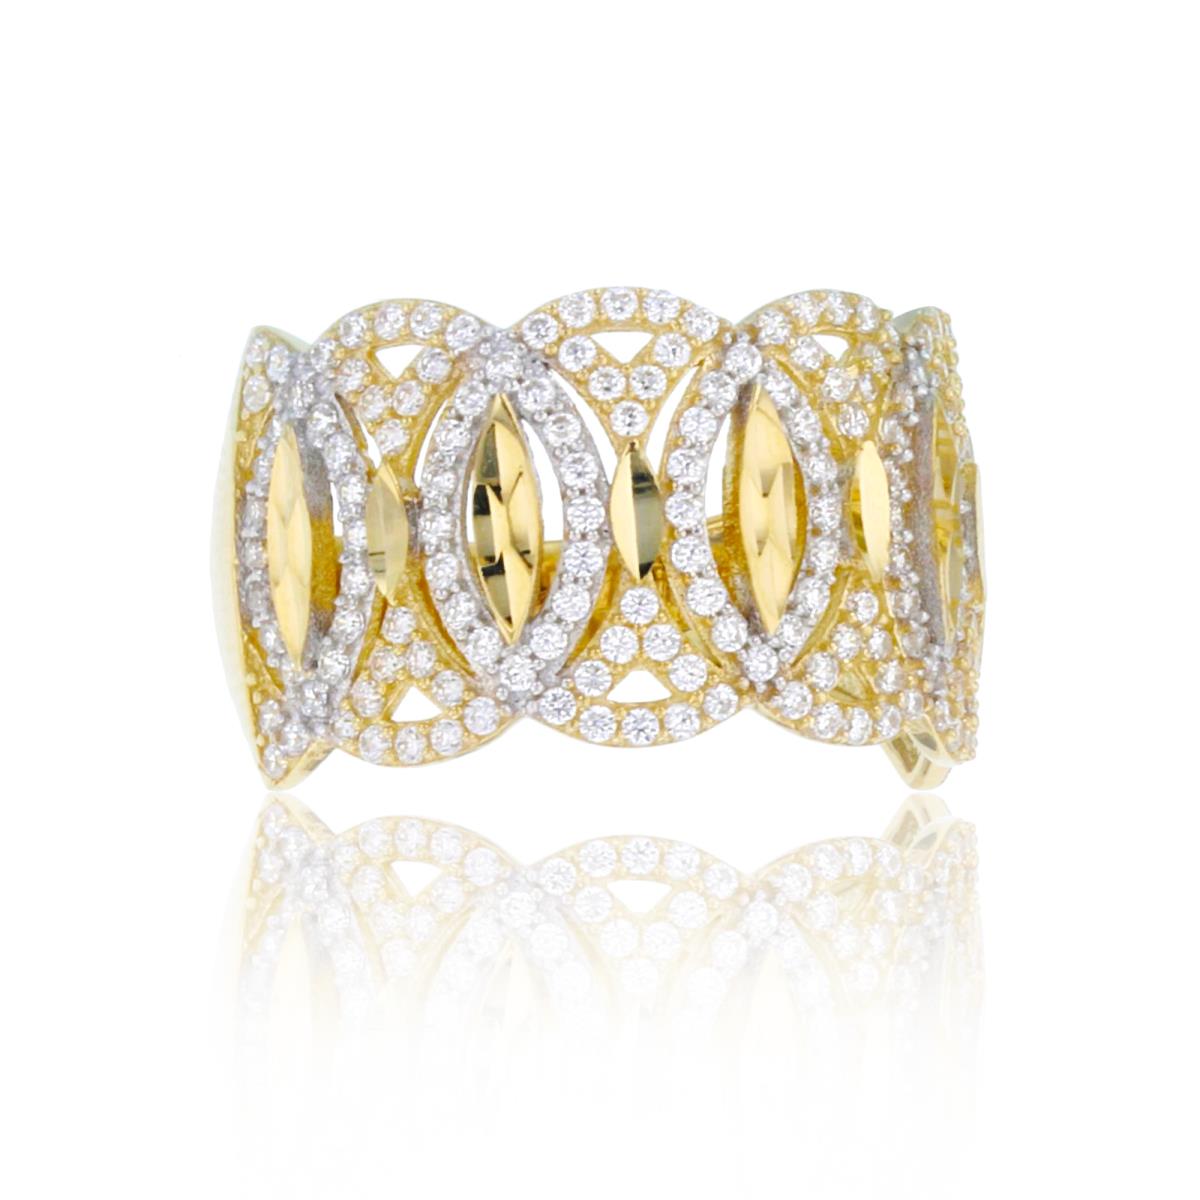 14K Two-Tone Gold DC Paved Interlocking Fashion Ring